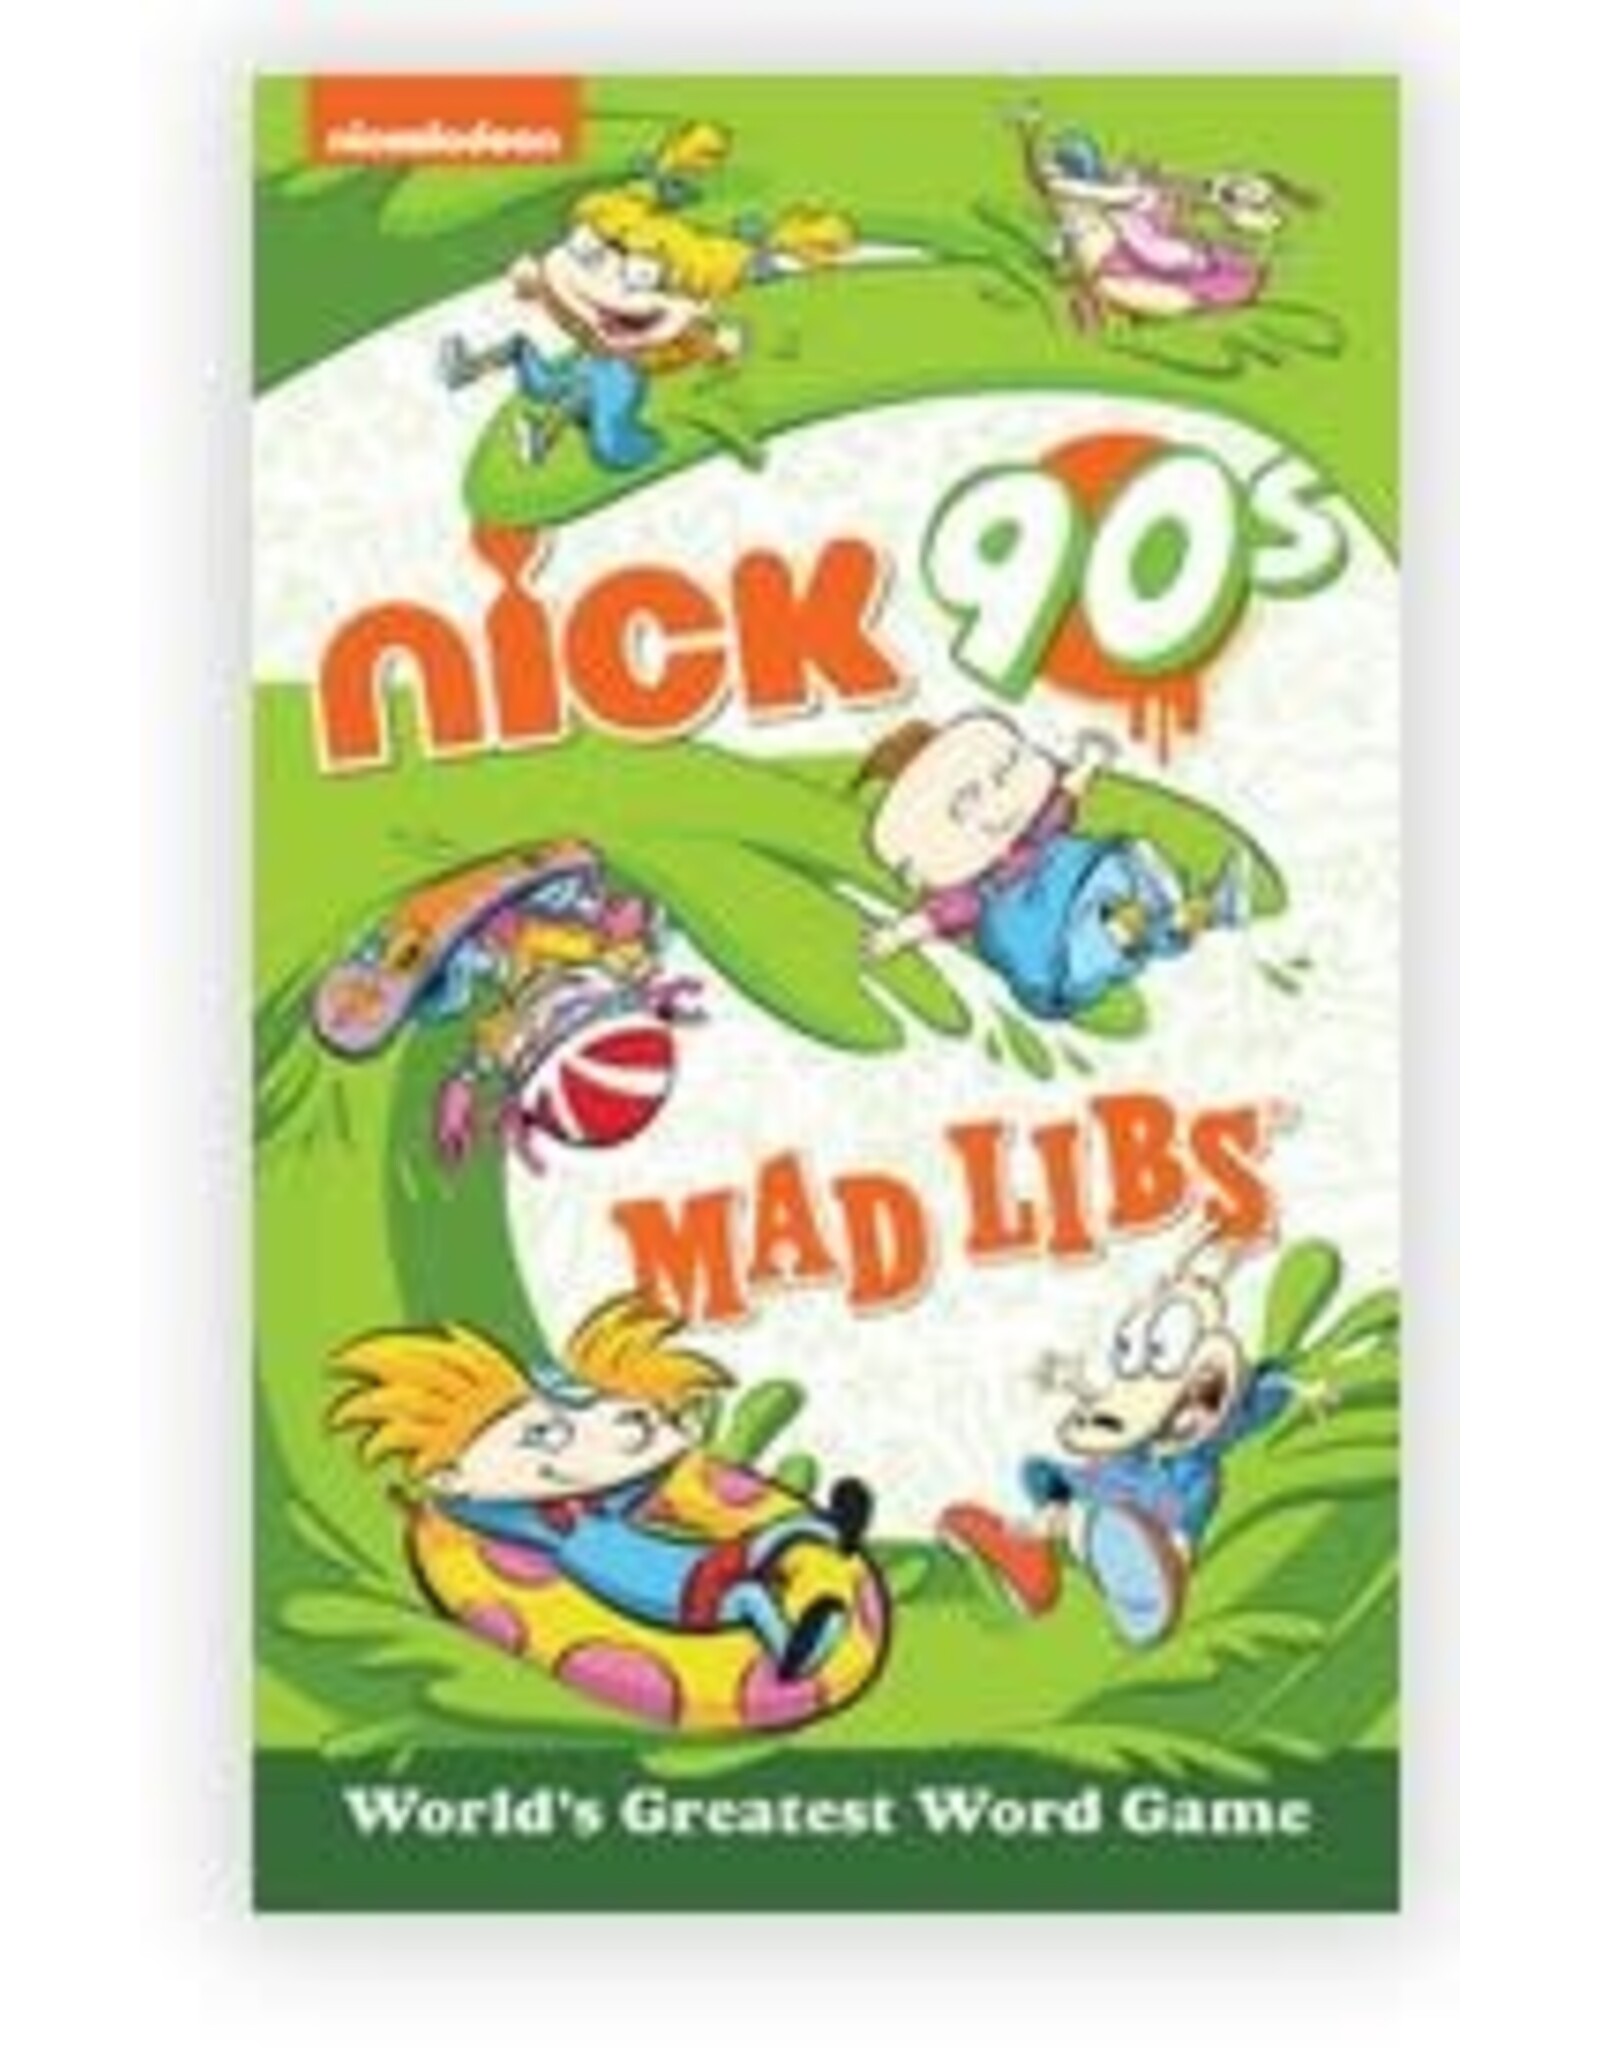 Mad Libs Nickelodeon: Nick 90s Mad Libs